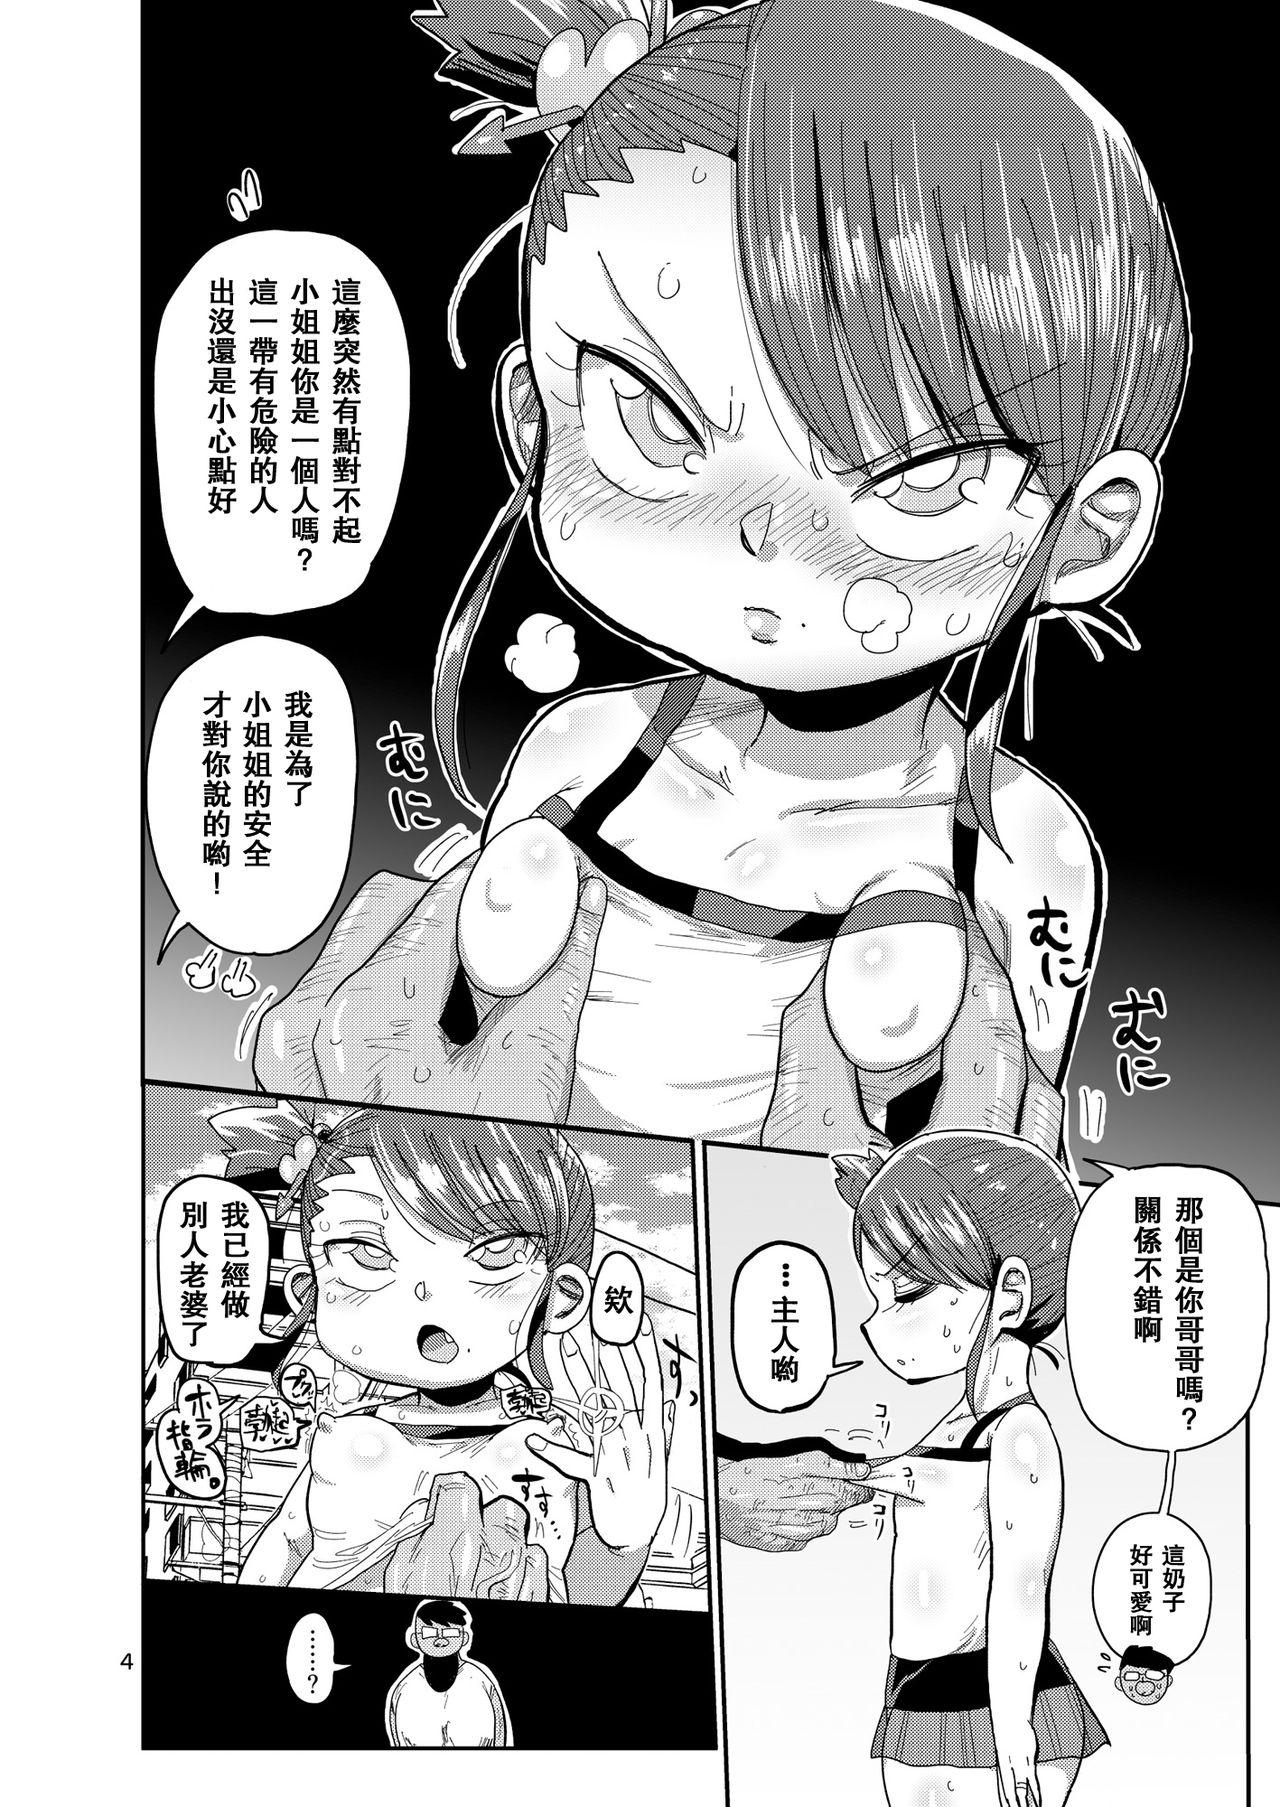 Daddy Watashi no Mawari ni wa Kiken ga Ippai! - Original Furry - Page 3